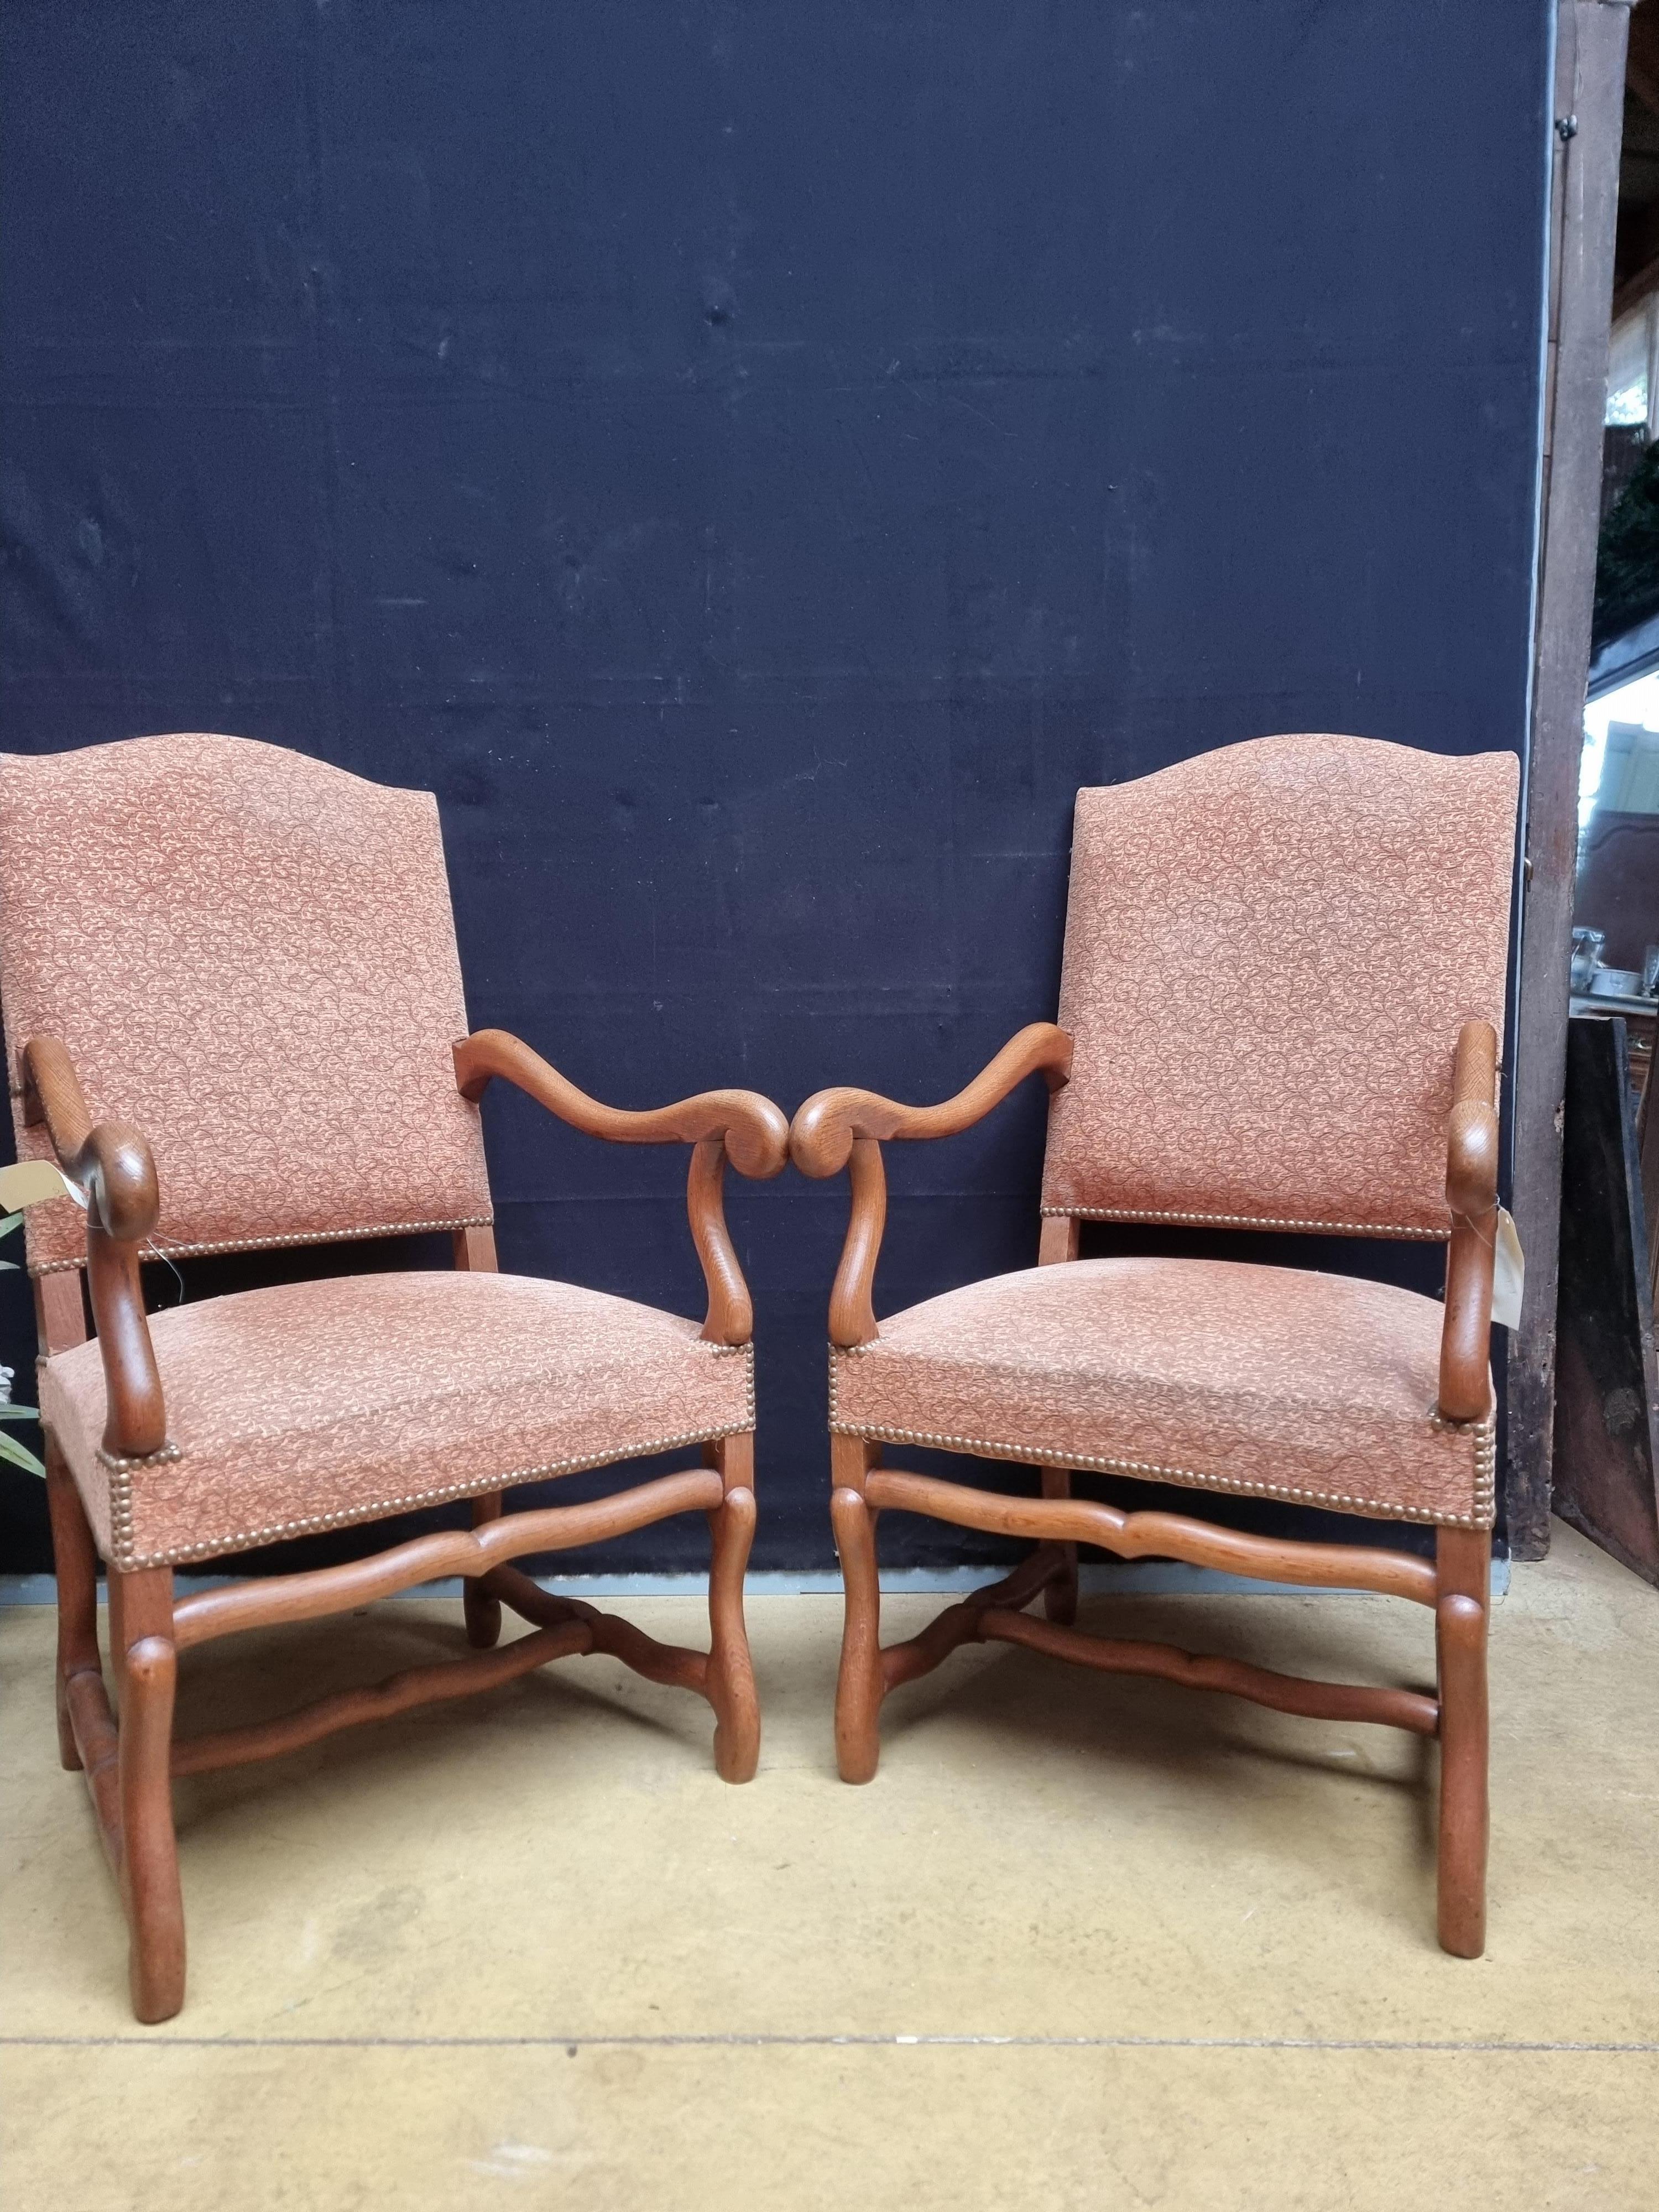 Ein Paar französische Louis XIII-Stil Nussbaum os de mouton Beine Sessel aus dem 20. Jahrhundert mit großen Scrollen Arme. Entdecken Sie die zeitlose Eleganz und den robusten Charme dieser Sessel aus Walnussholz im französischen Louis XIII-Stil, ein